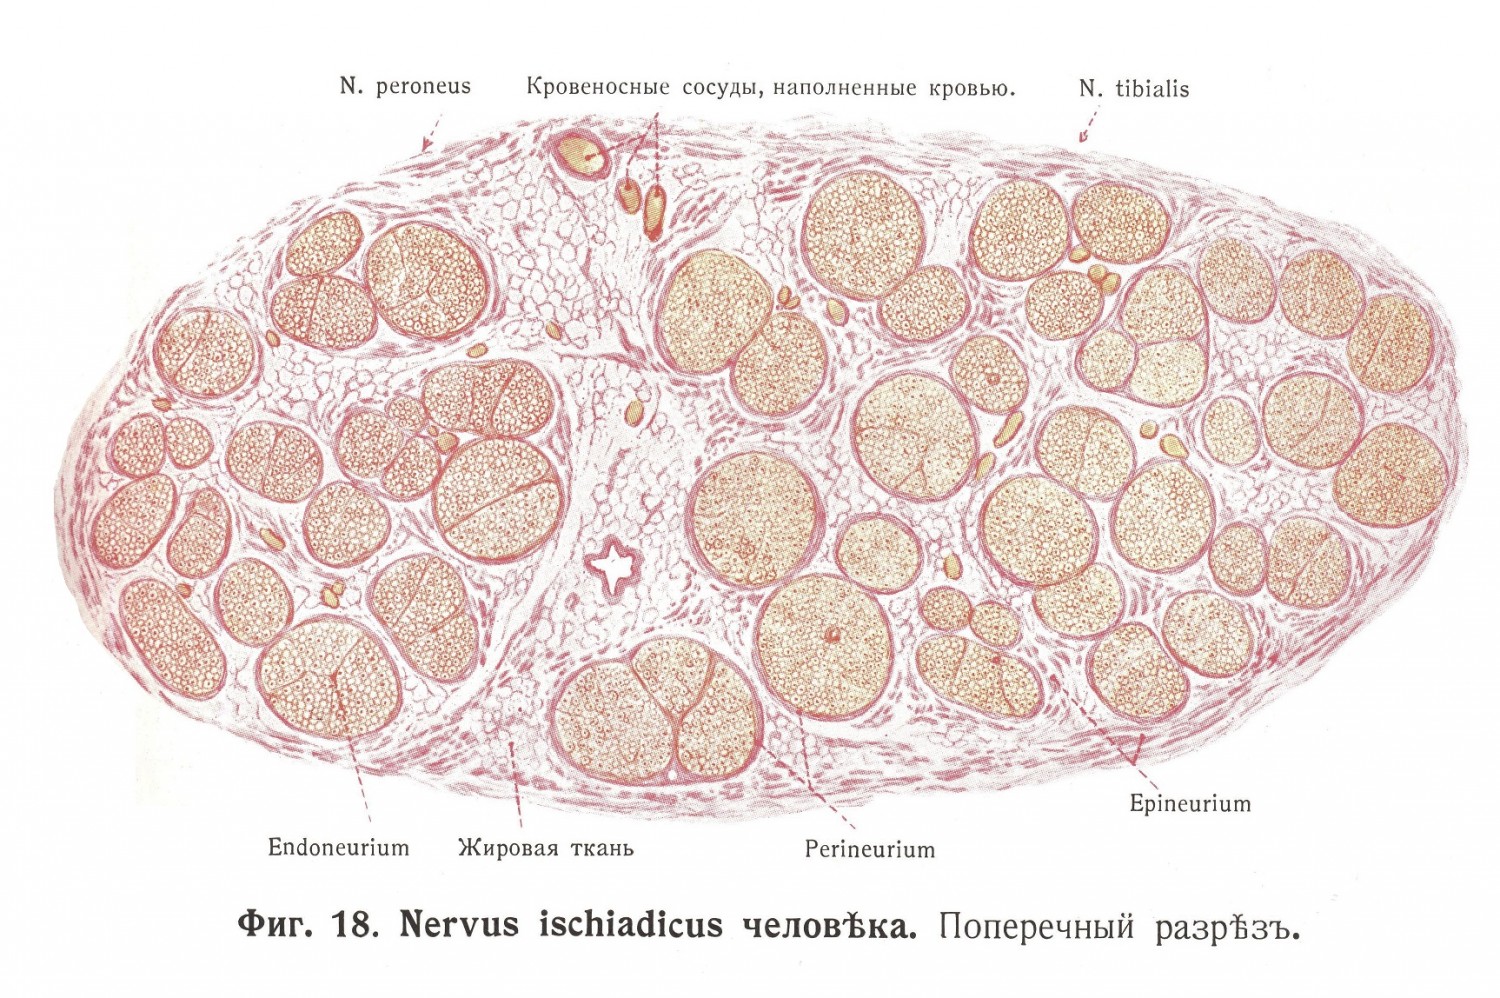 Nervus ischiadicus человека. Поперечный разрез